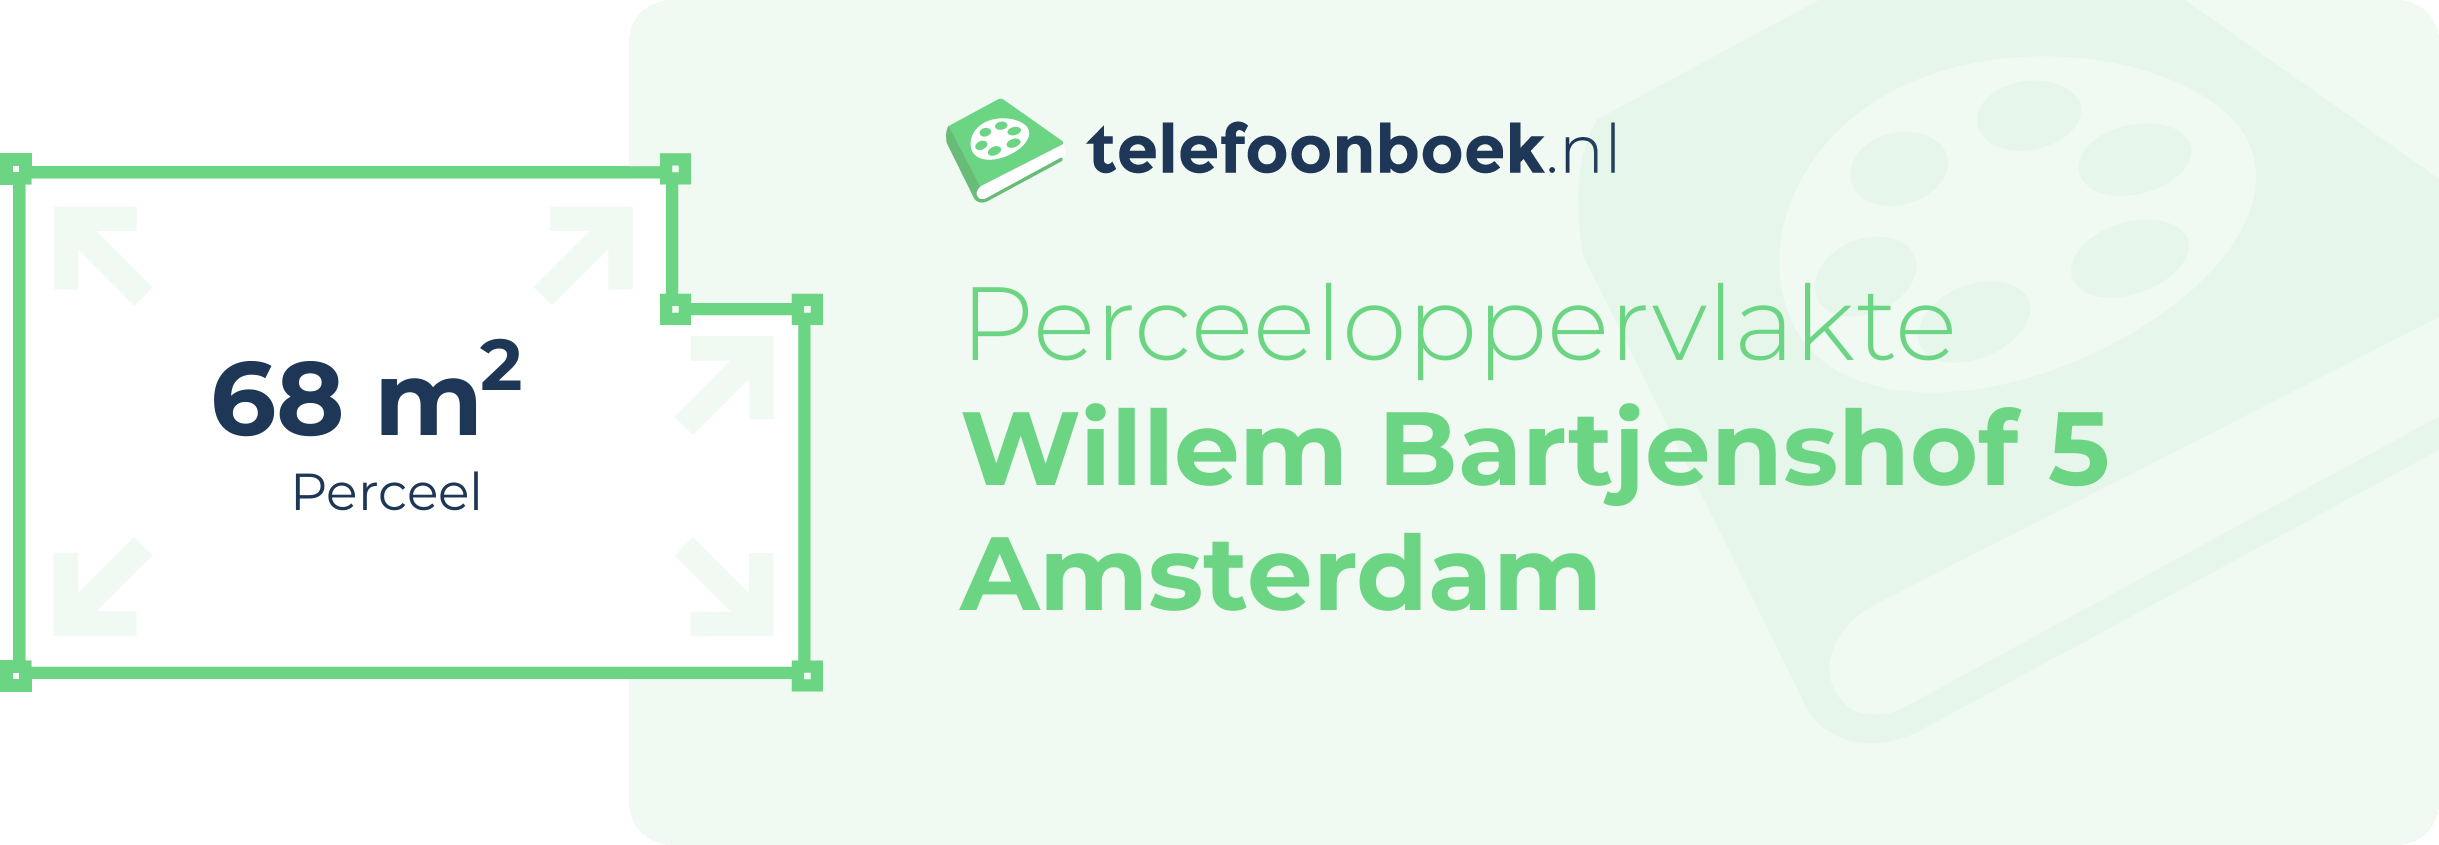 Perceeloppervlakte Willem Bartjenshof 5 Amsterdam